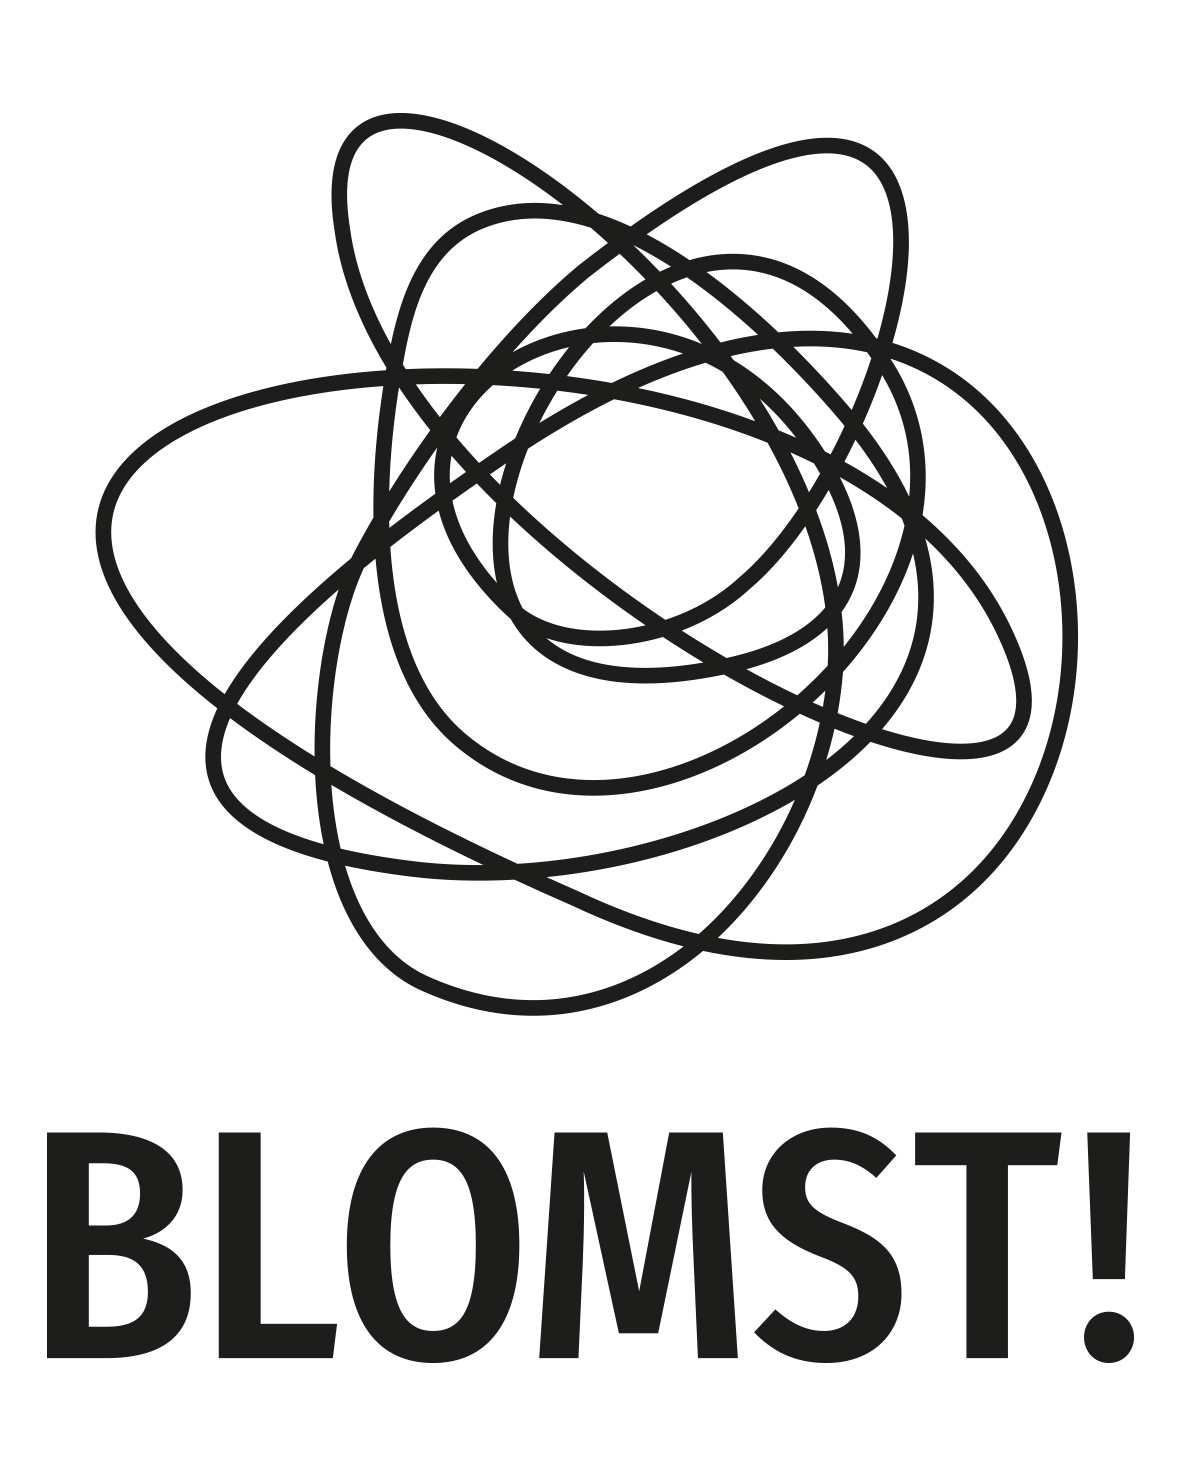 BLOMST_Logo_black_web.jpg